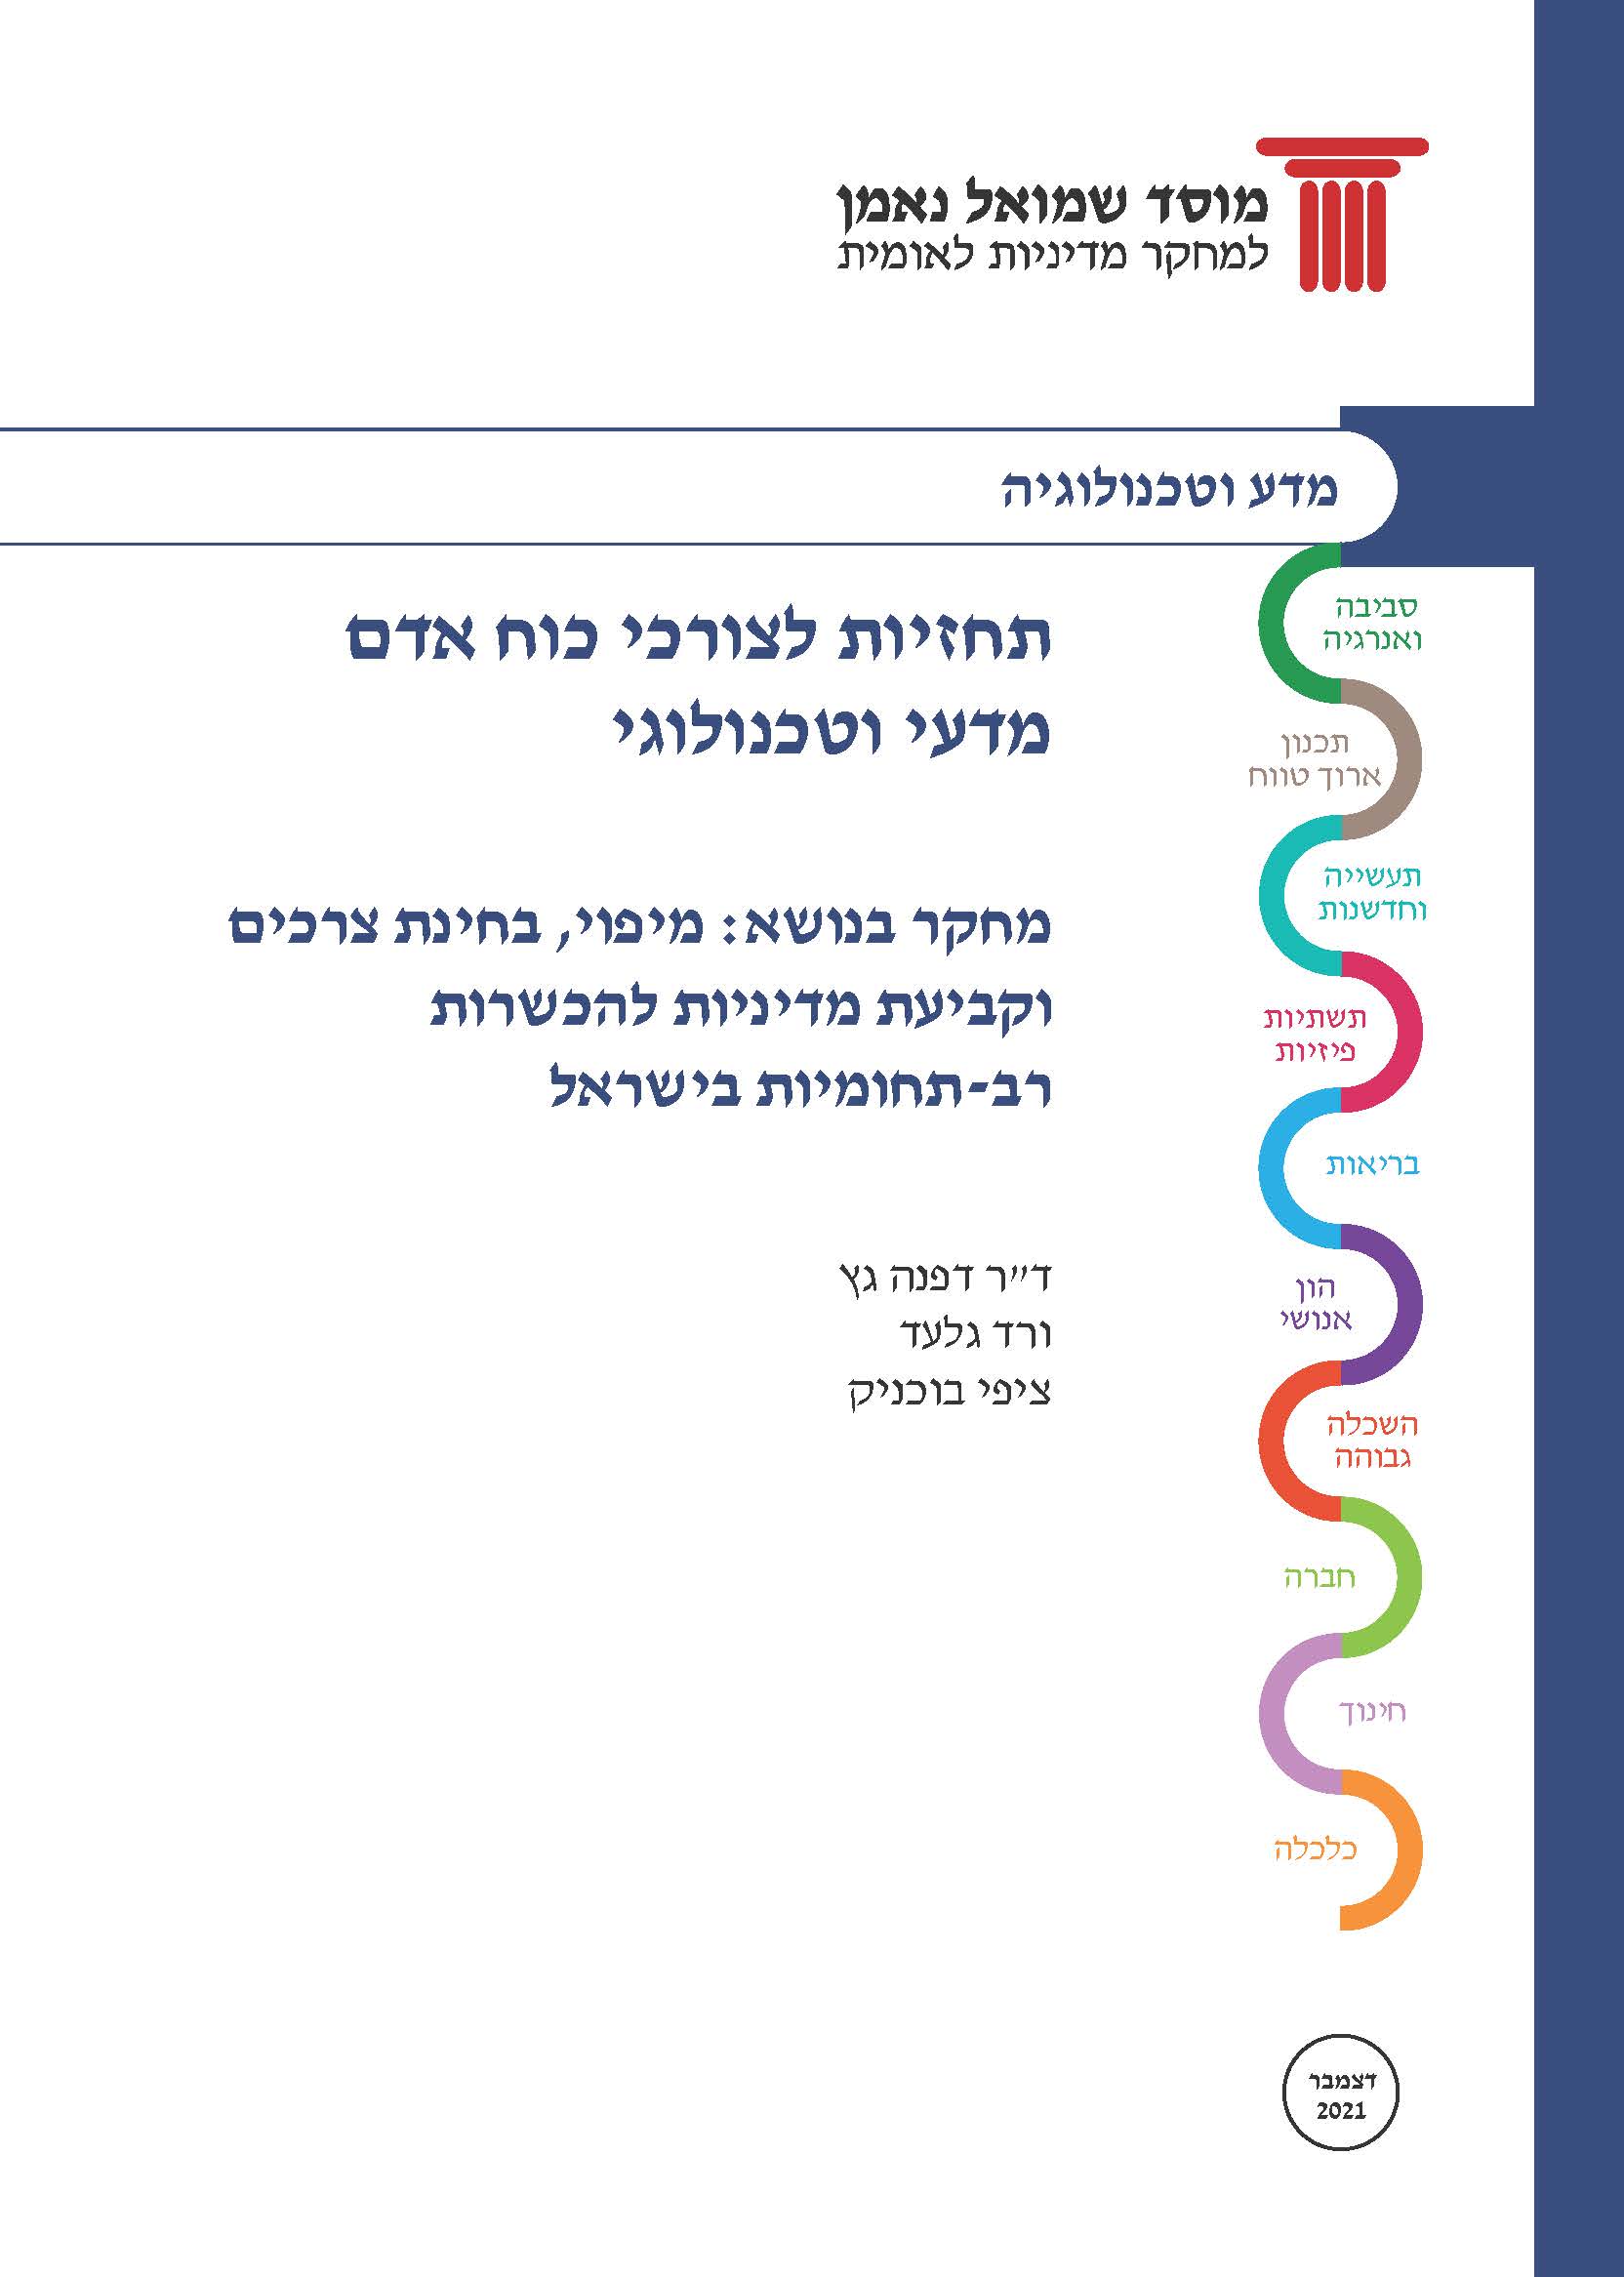 תחזיות לצורכי כוח אדם מדעי וטכנולוגי מיפוי, בחינת צרכים וקביעת מדיניות להכשרות רב-תחומיות בישראל